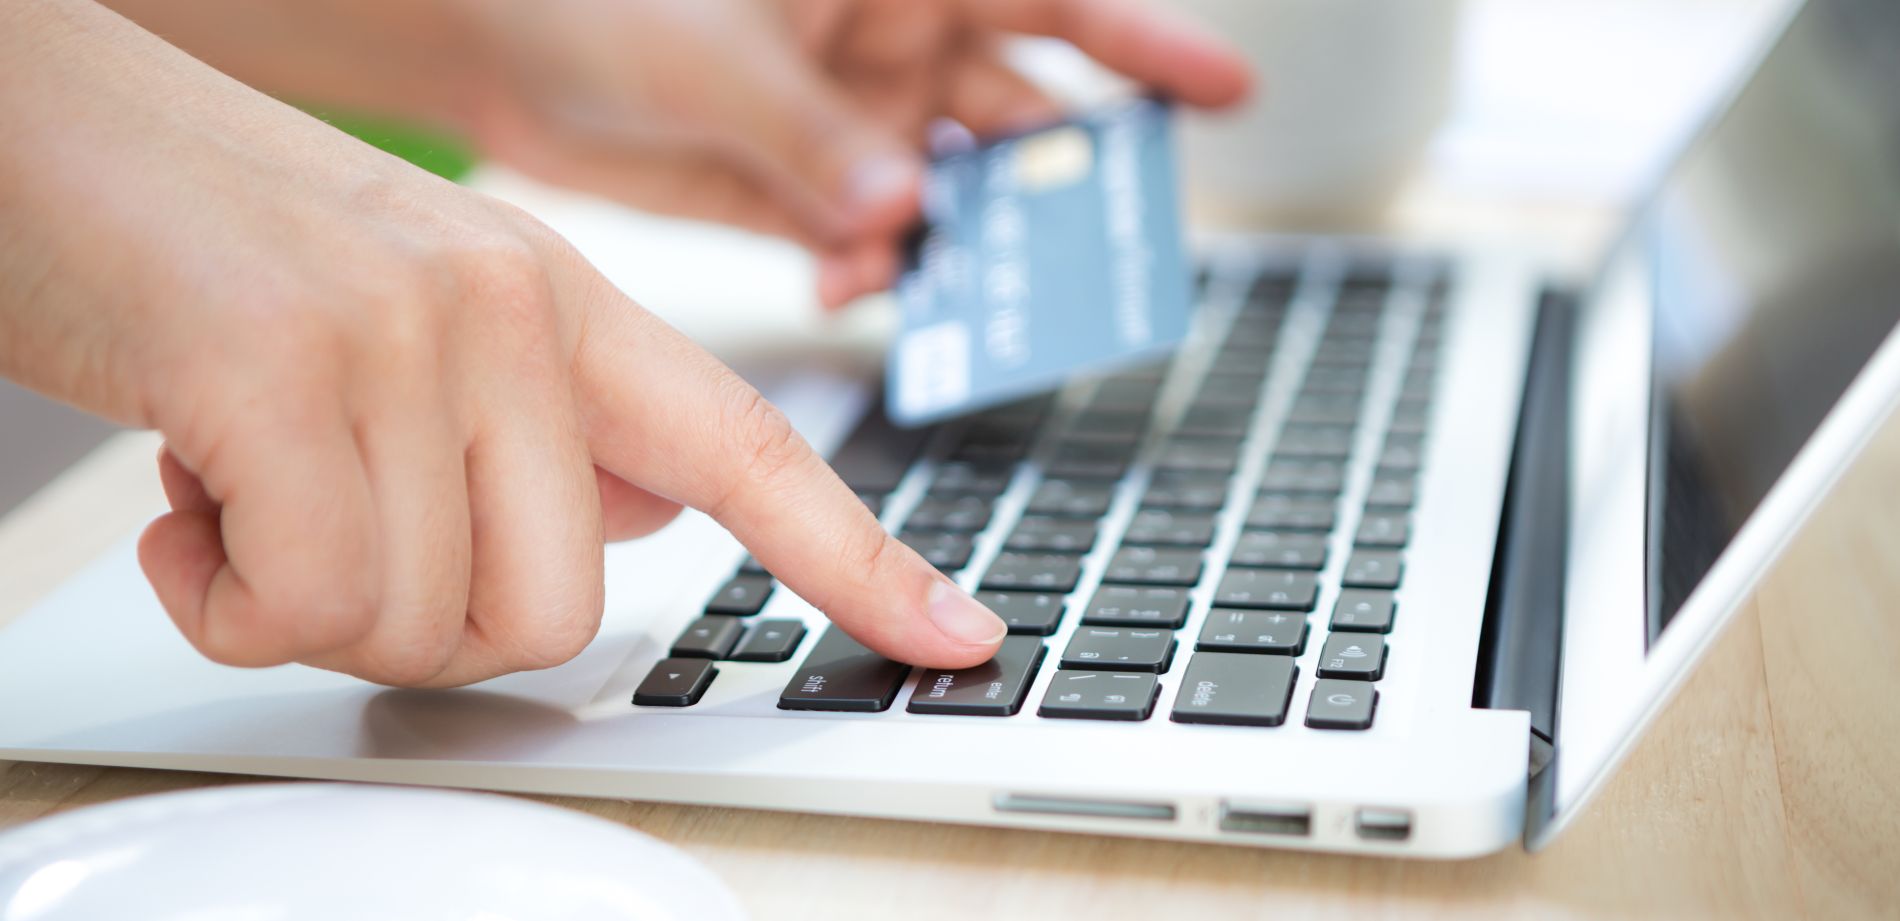 Tu PYME Digital Tienda Online con Carro de compras y Plataforma de pagos Online